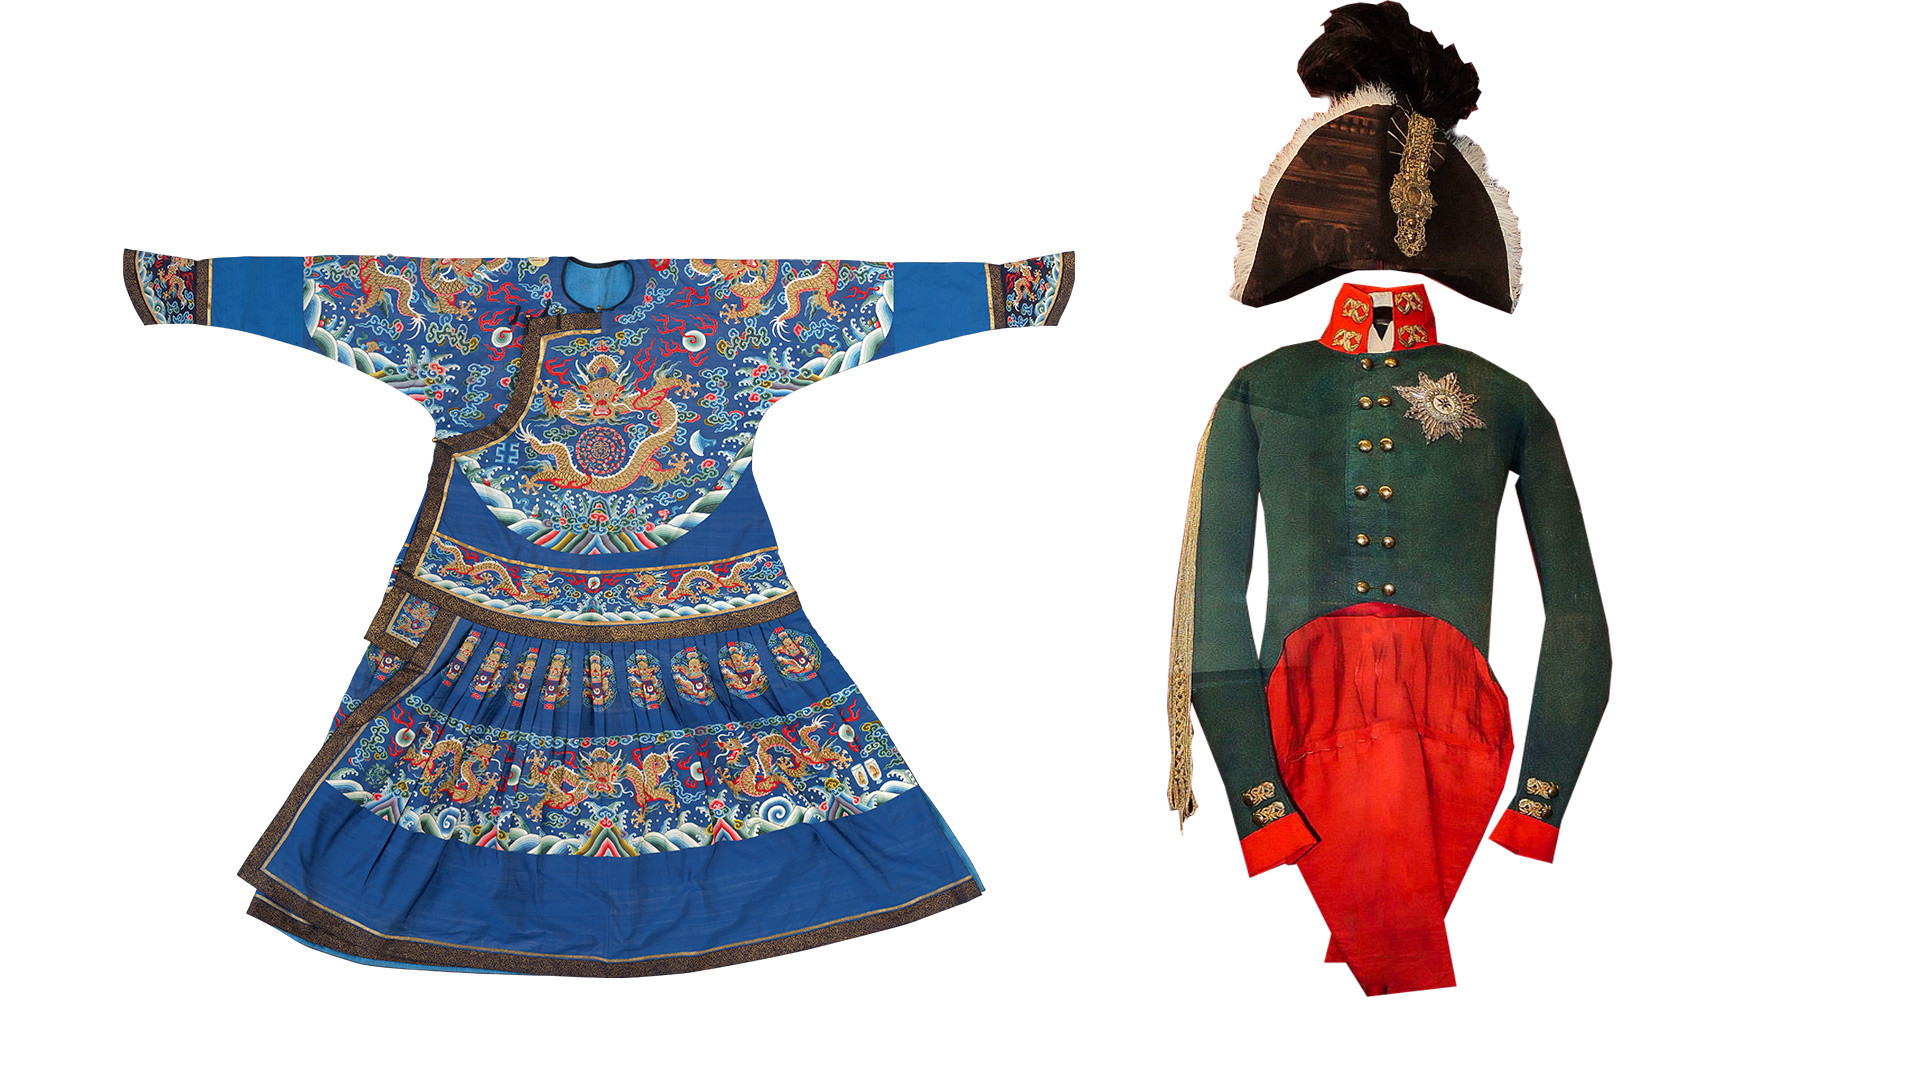 À esquerda, o manto azul do imperador, feito de seda, do período de Jiaqing (1735-1796). À direita, o traje de coroação de Aleksandr 1° da Rússia.